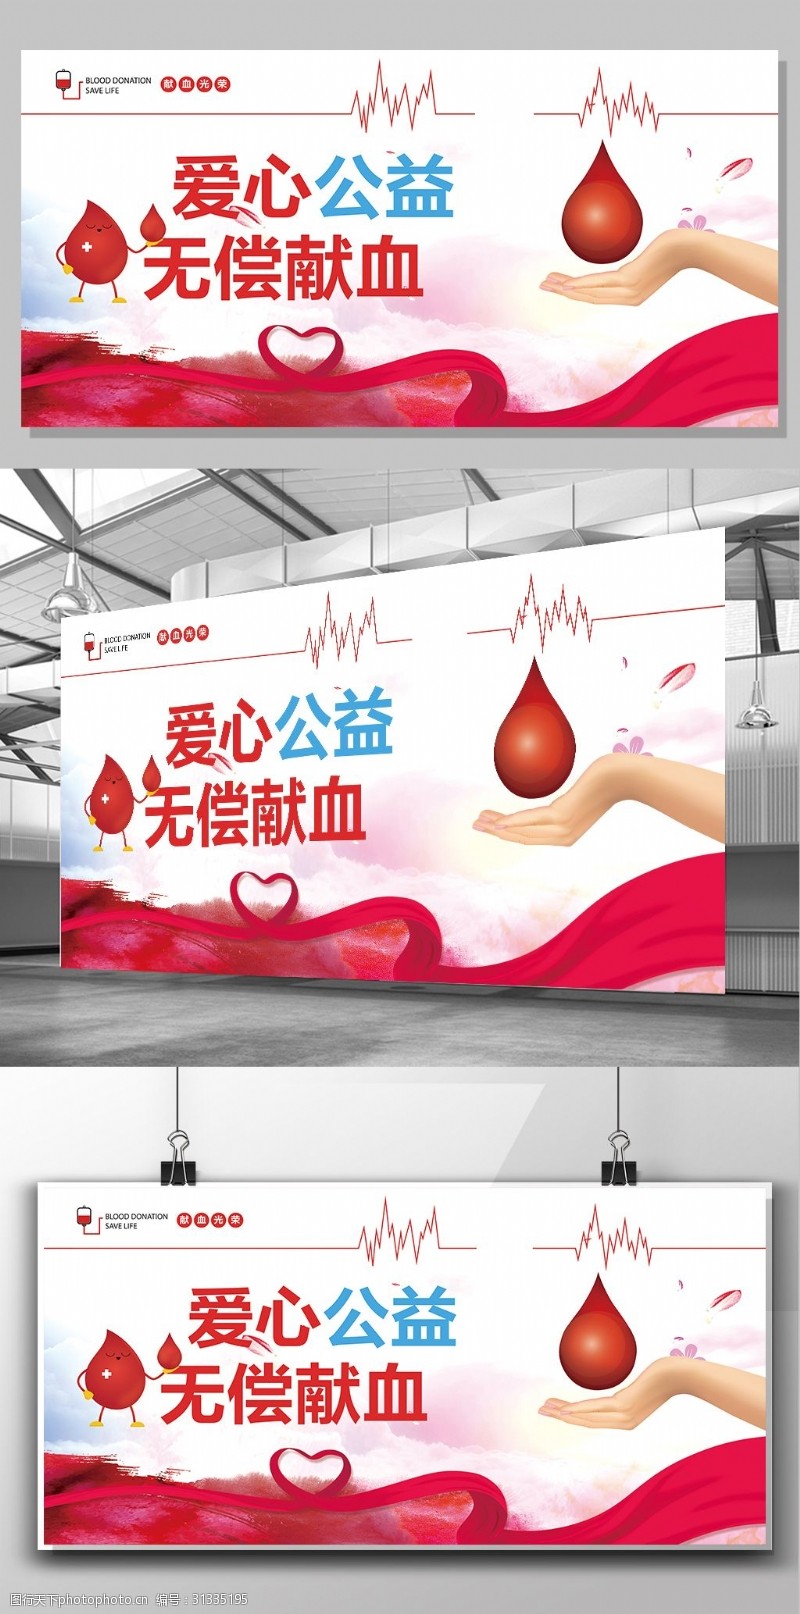 无证2017年医院创意献血展板设计